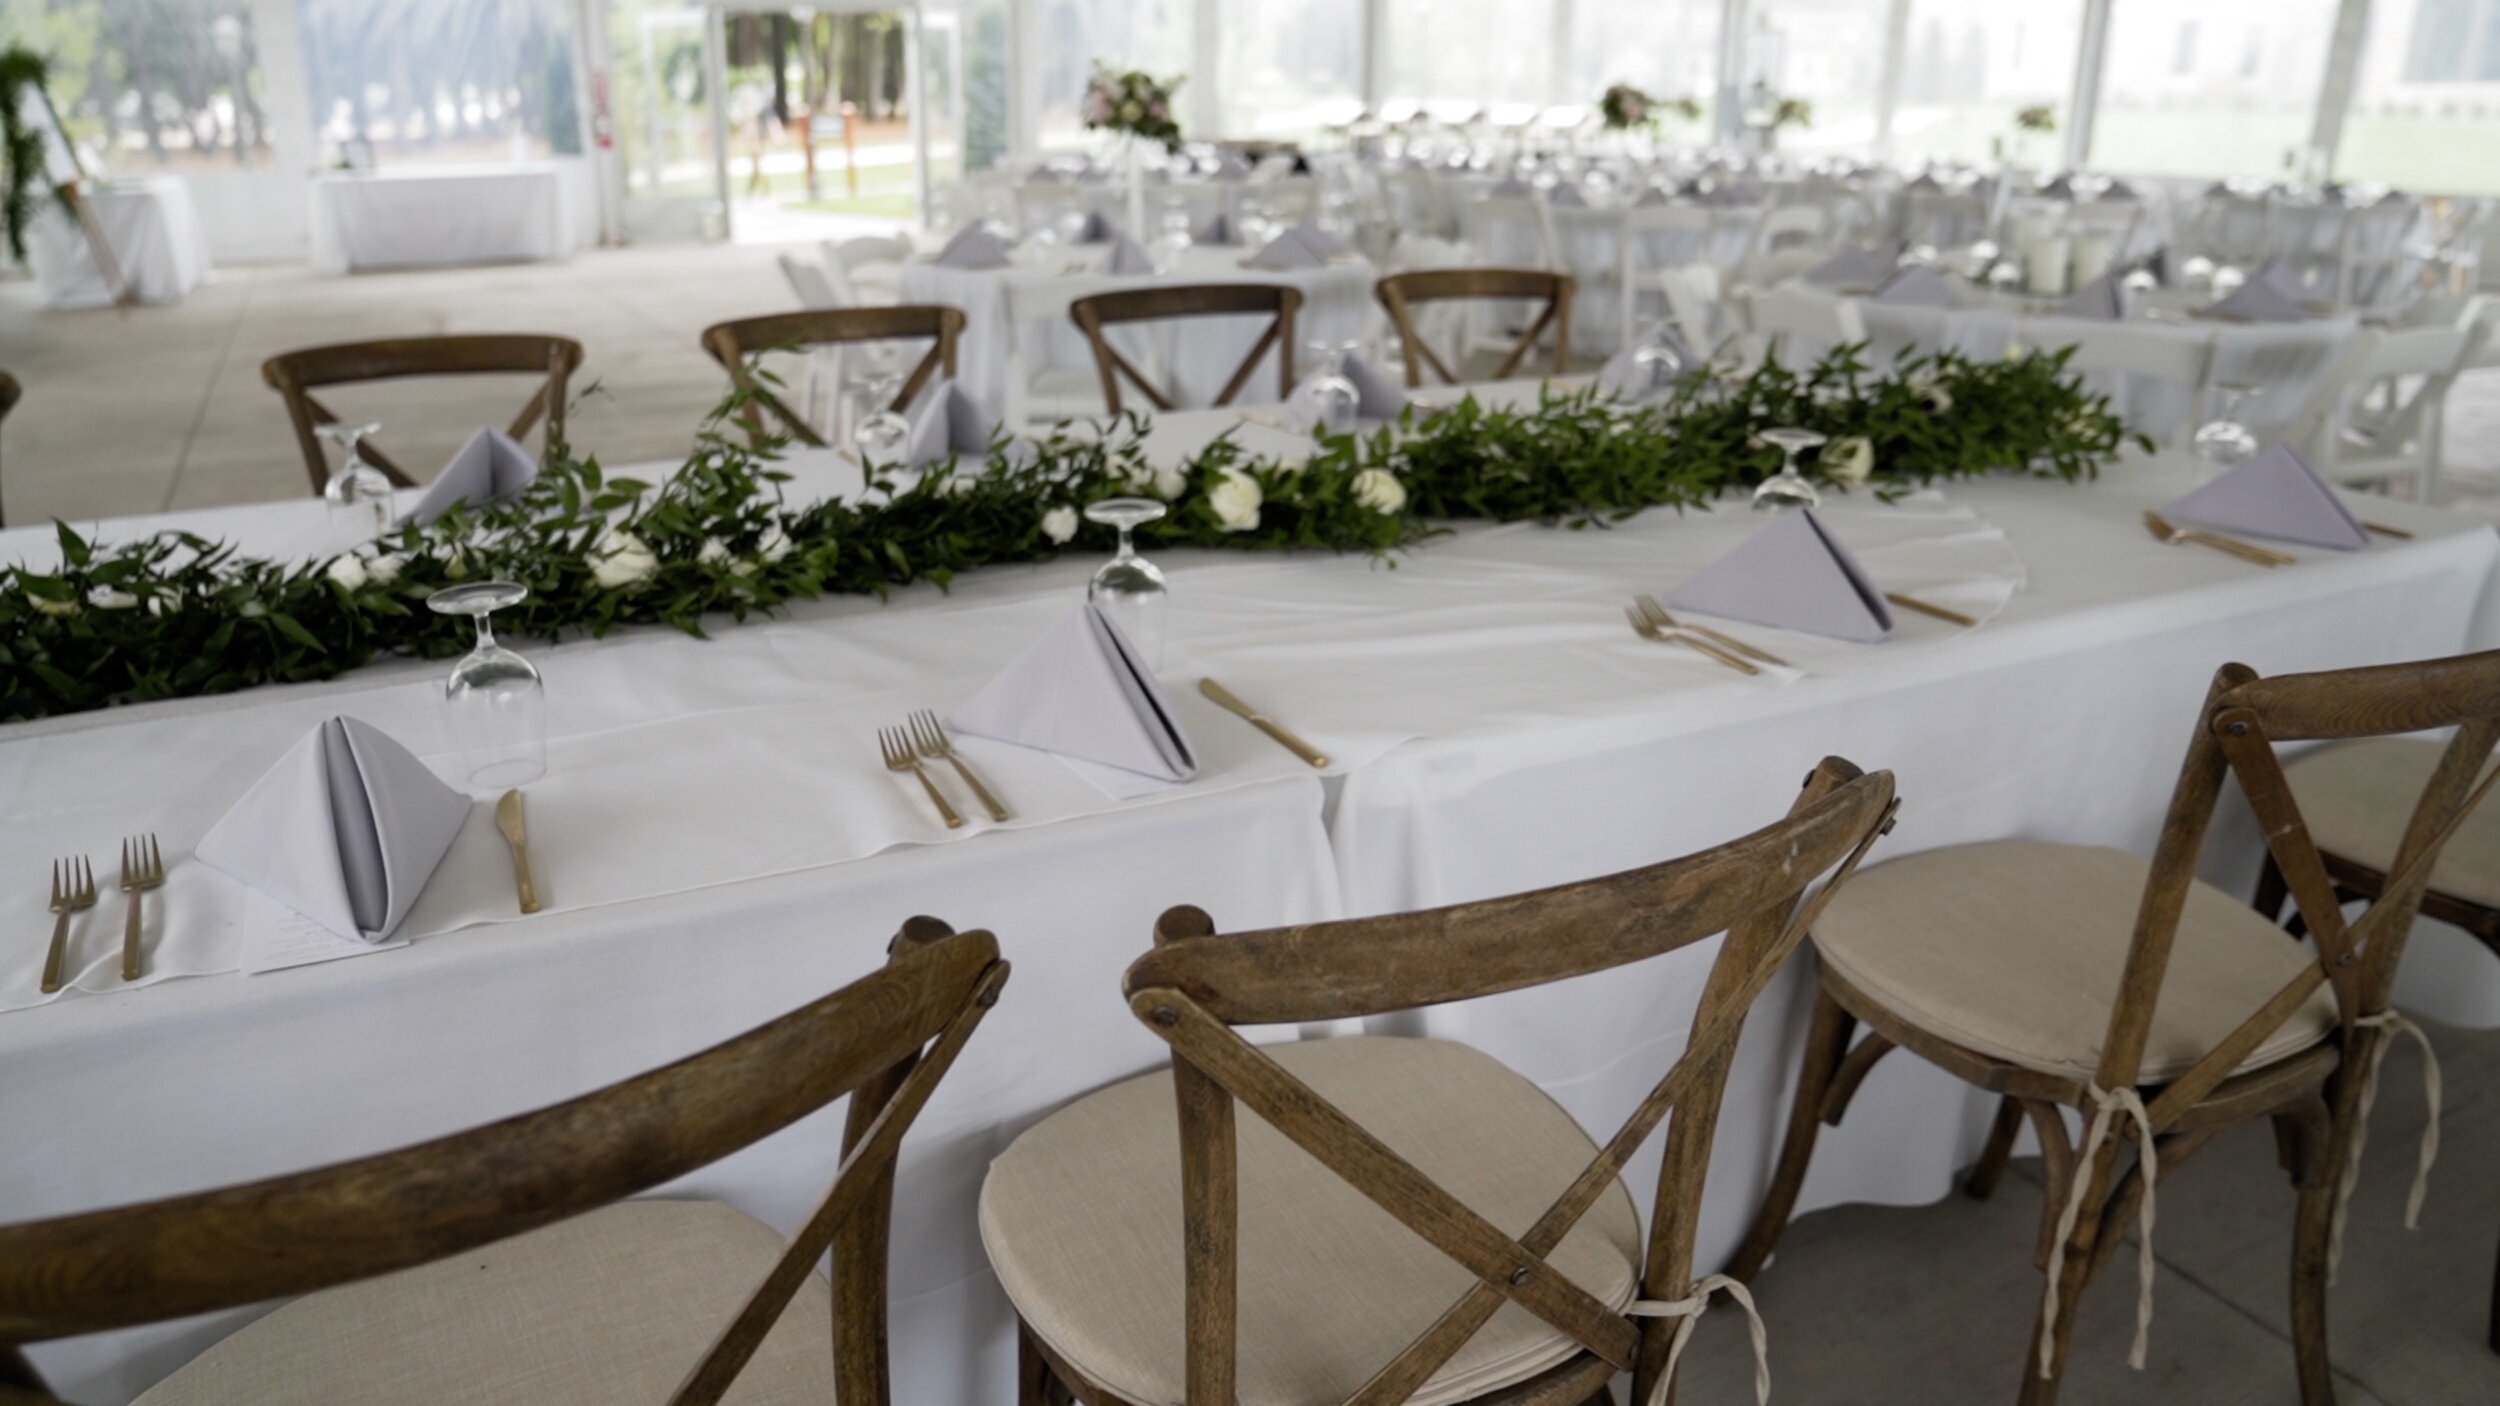 Interiro wedding decor at Bishops Bay Wedding Venue